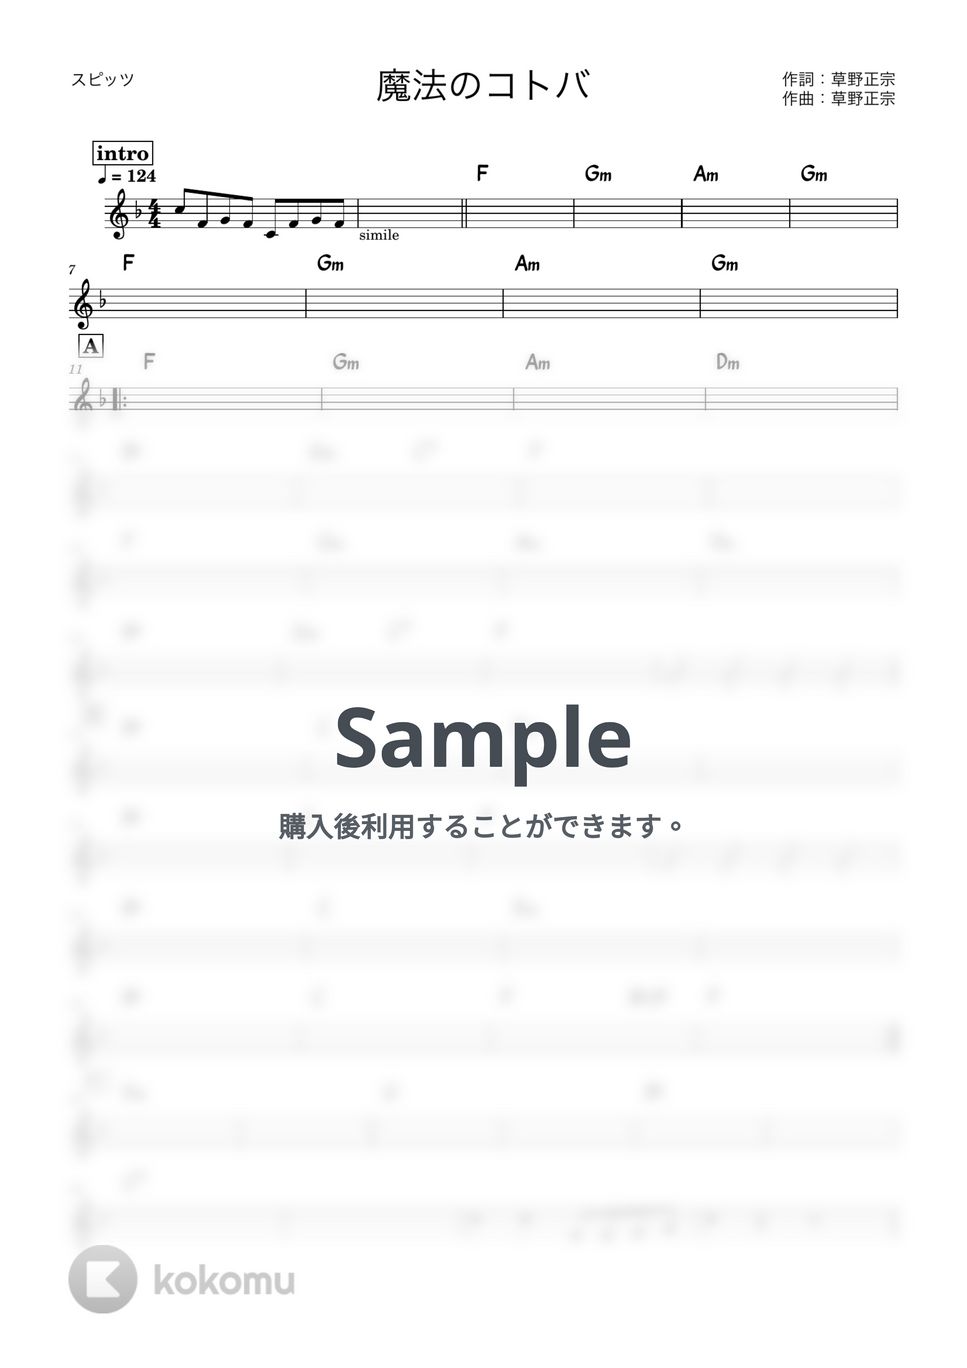 スピッツ - 魔法のコトバ (バンド用コード譜) by 箱譜屋